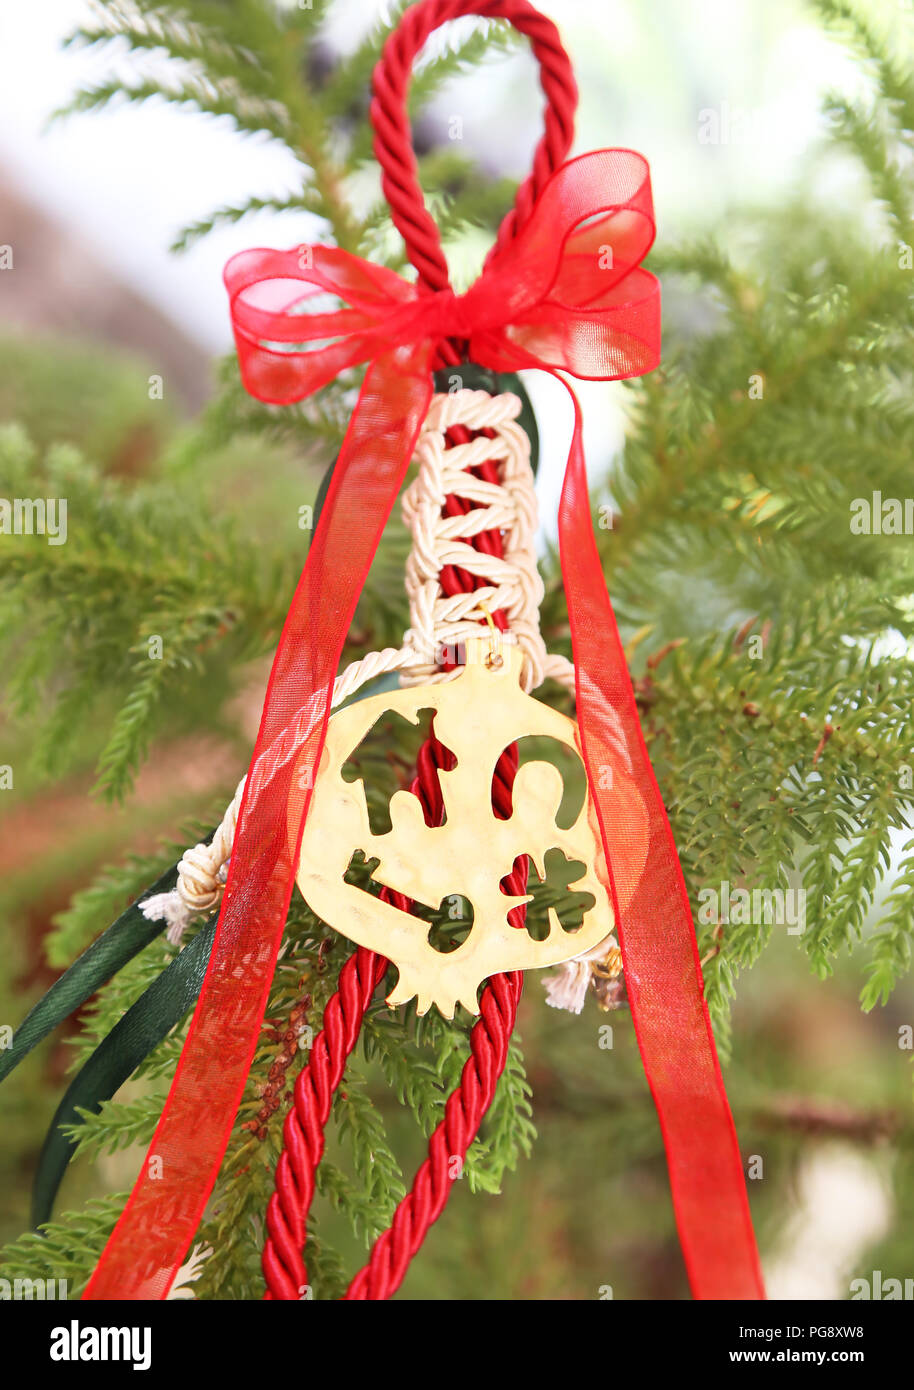 Dekorative Weihnachten Glücksbringer - Weihnachten goldener Granatapfel -  traditionelle griechische Ornamente Stockfotografie - Alamy